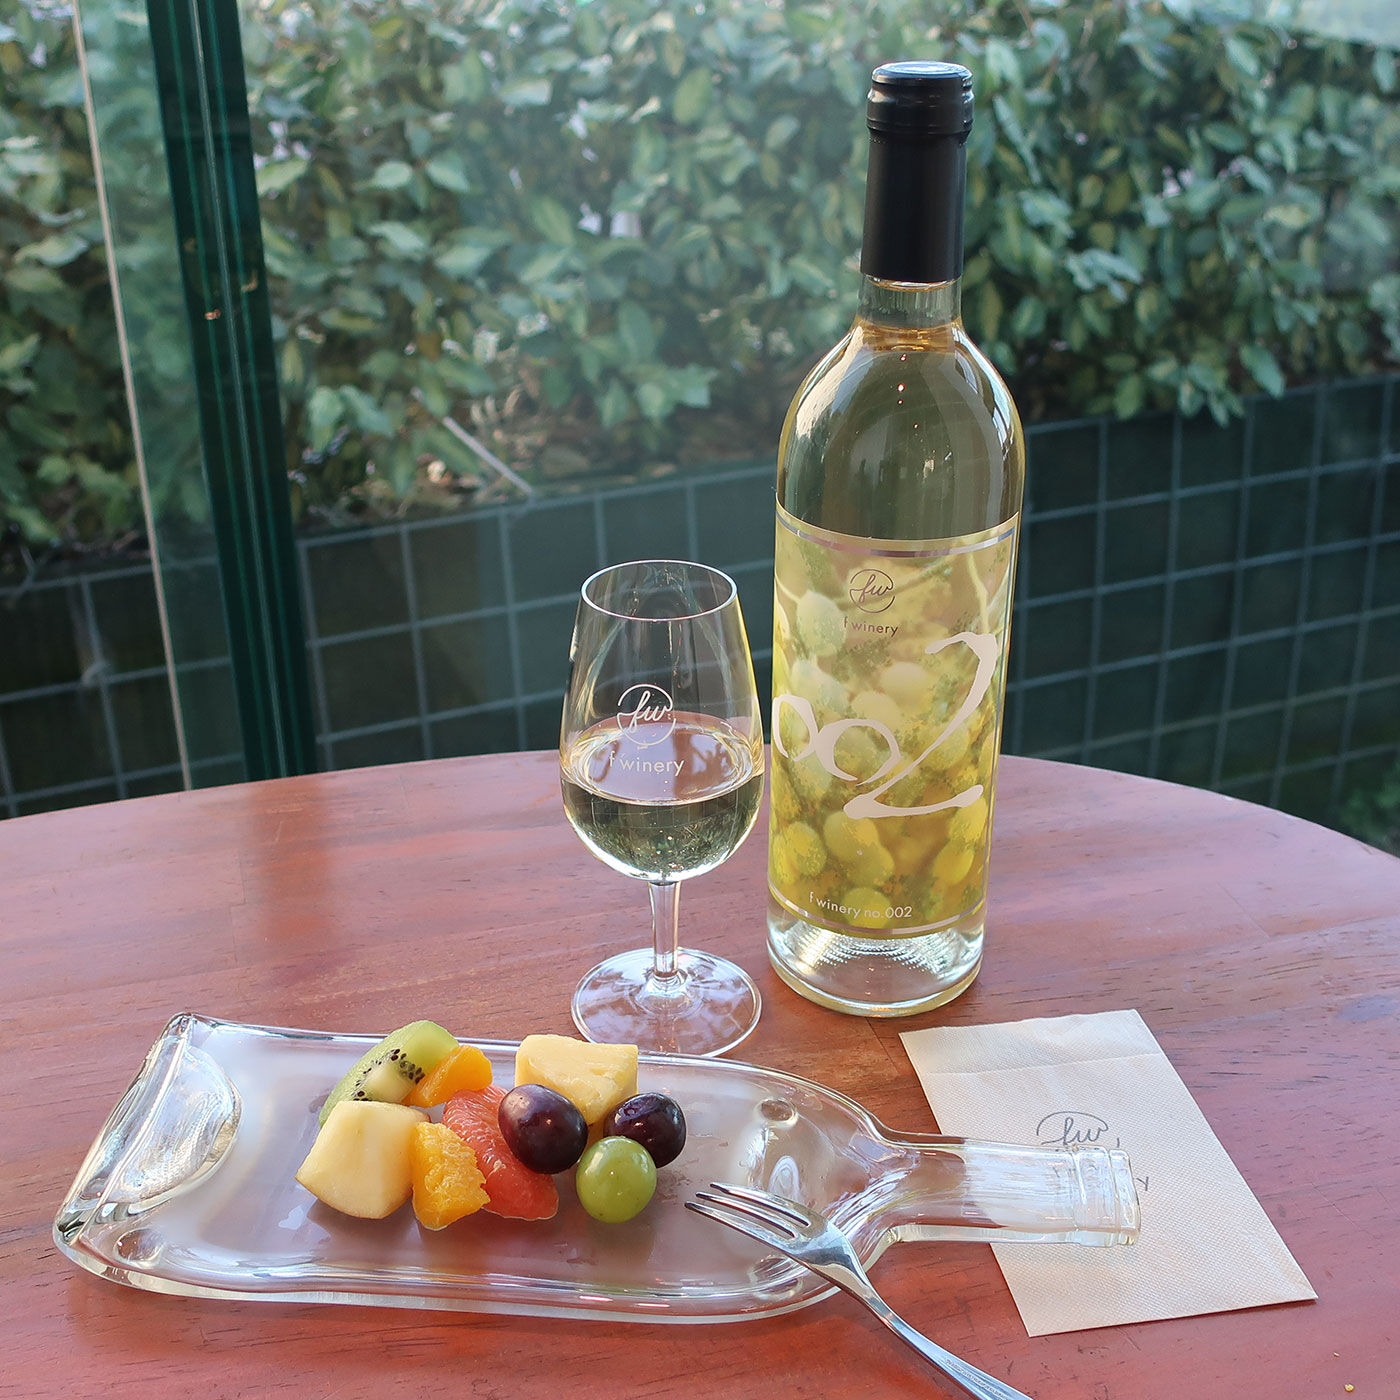 フェリシモコネクション|f winery002　ナイアガラ|ワイン本来の味わいを楽しんでほしいからドライフルーツやレーズンなど軽めのおつまみがおすすめ。